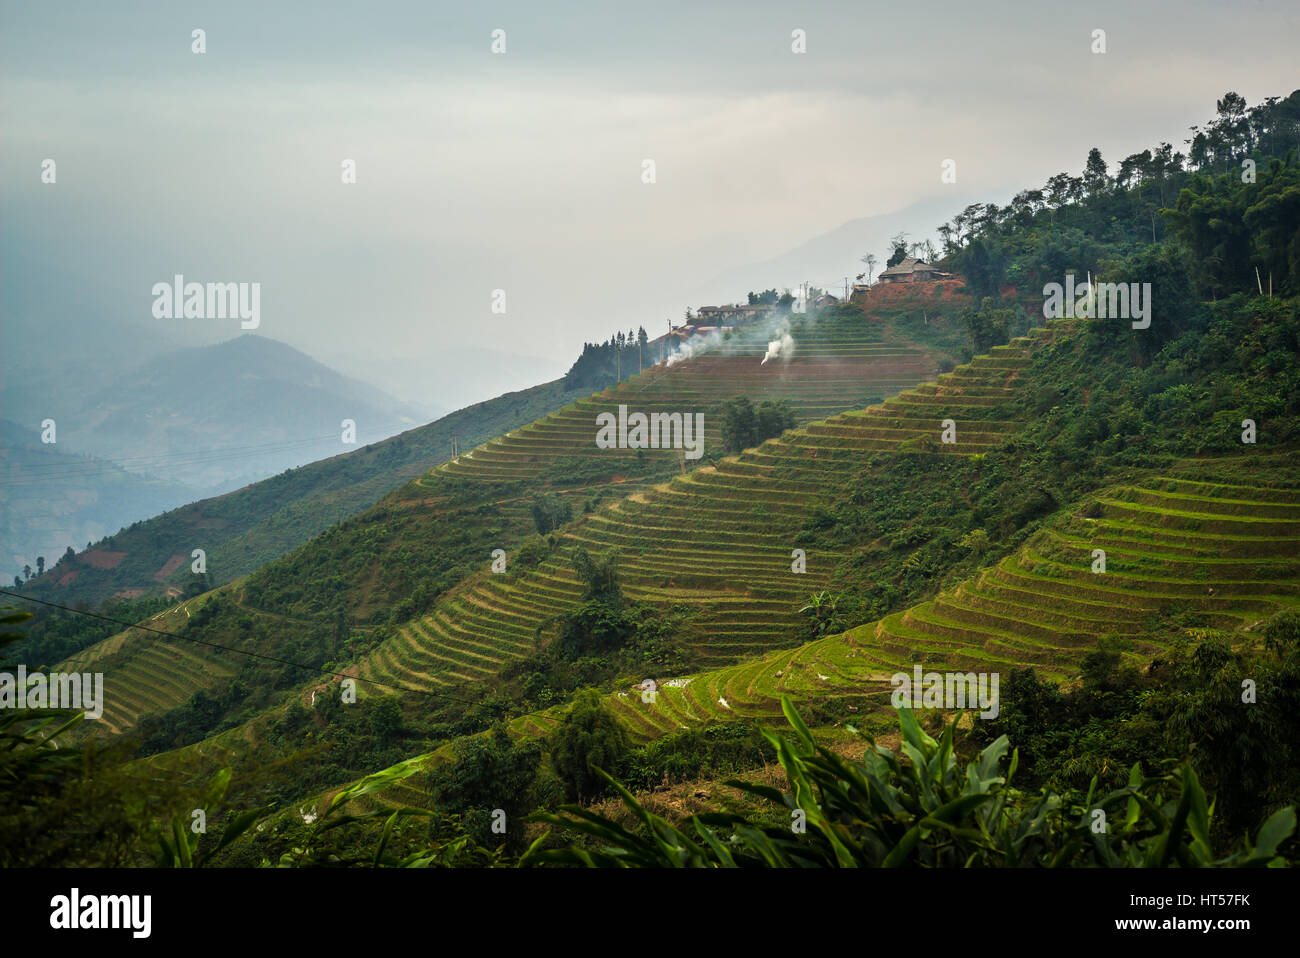 Meravigliose terrazze di riso nelle montagne della regione di Sapa in Vietnam Foto Stock